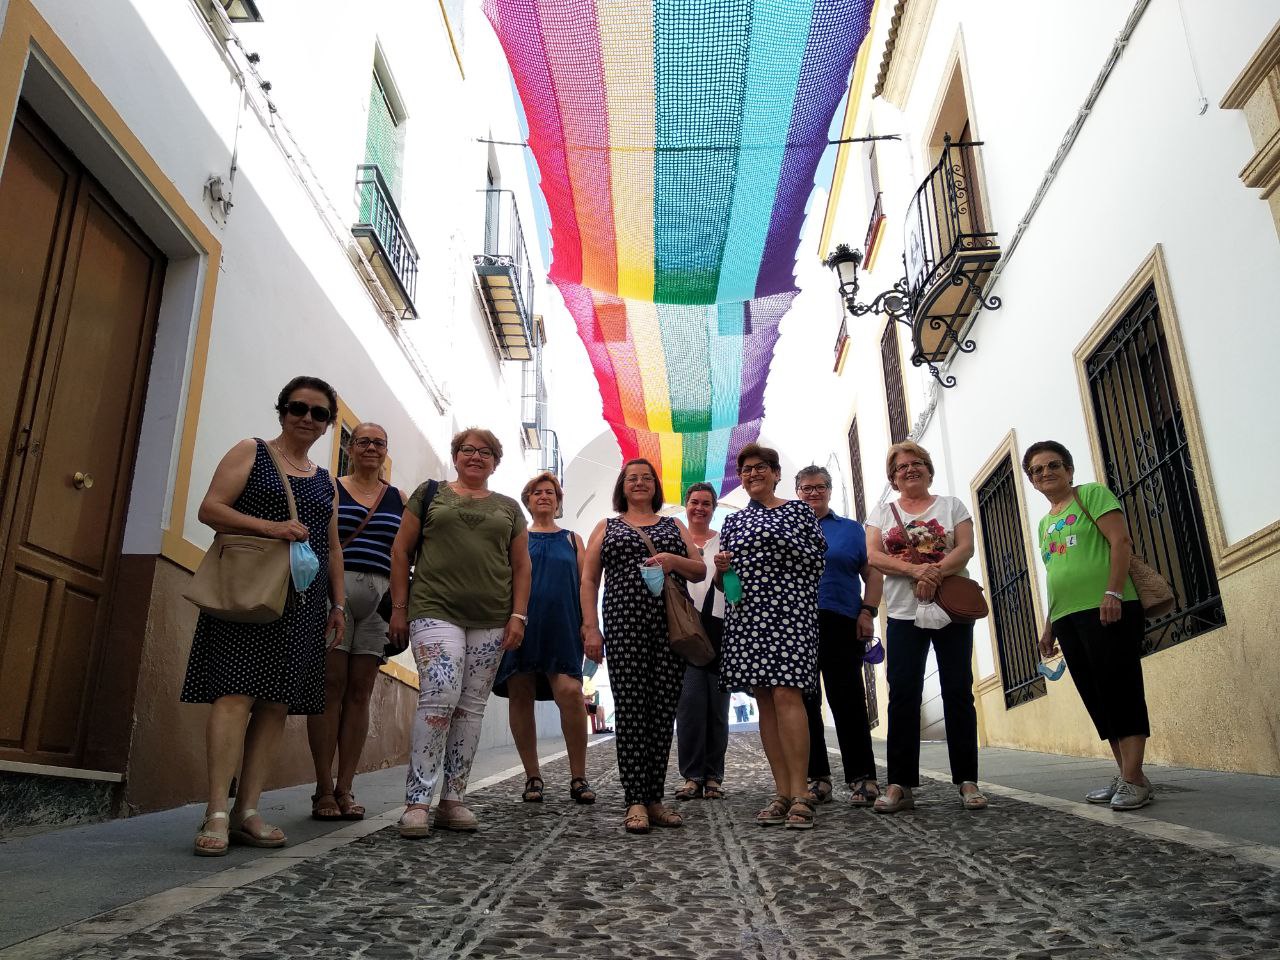 Orgullo de pueblo: Más de 50 metros de bandera LGTBI hecha con croché